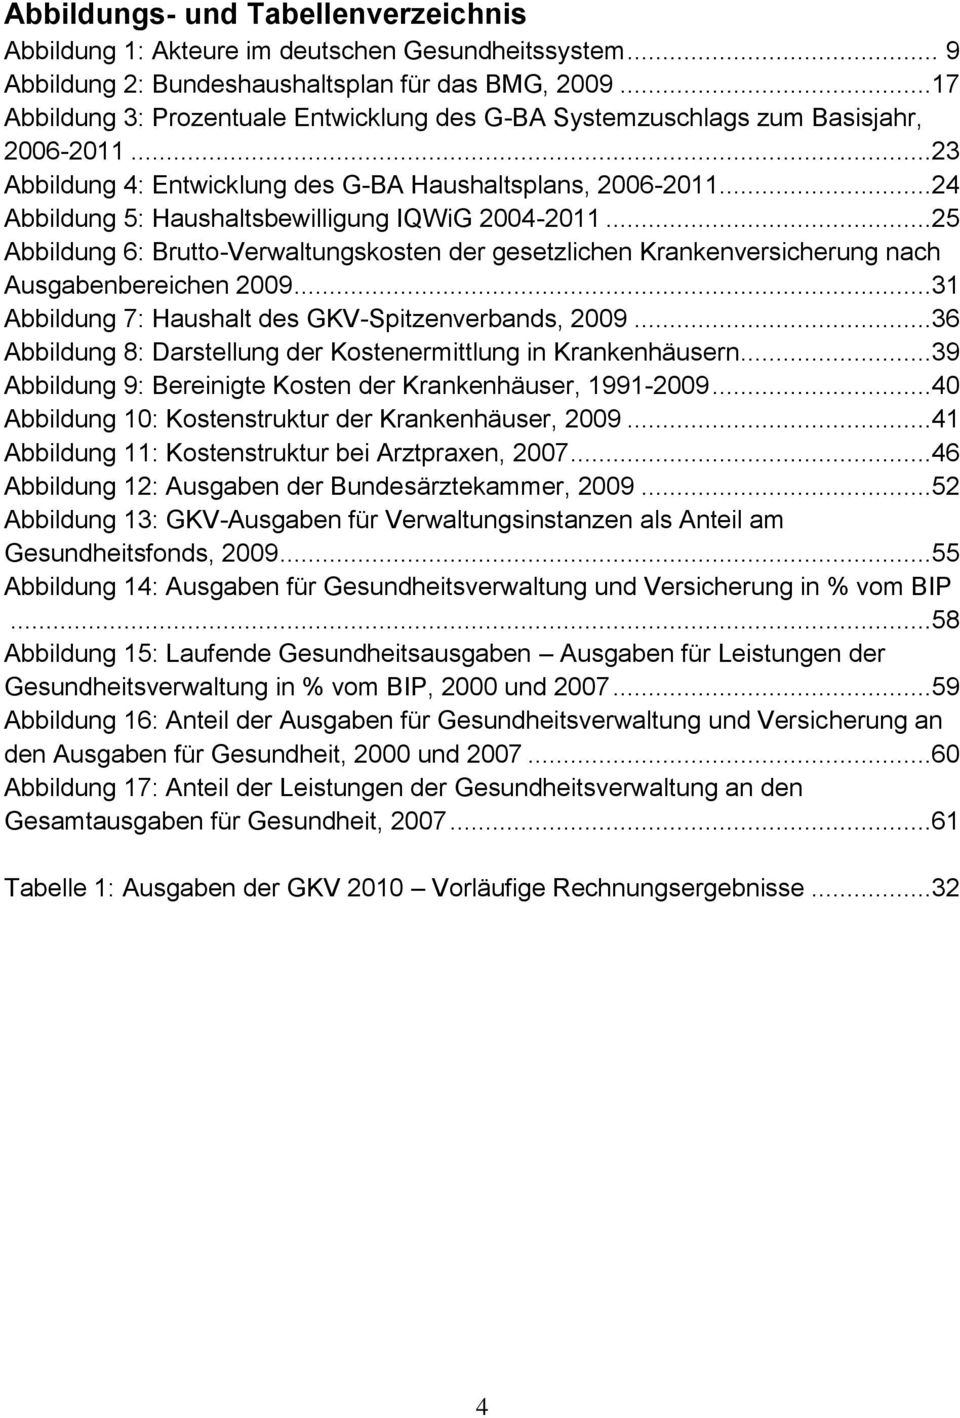 ..24 Abbildung 5: Haushaltsbewilligung IQWiG 2004-2011...25 Abbildung 6: Brutto-Verwaltungskosten der gesetzlichen Krankenversicherung nach Ausgabenbereichen 2009.